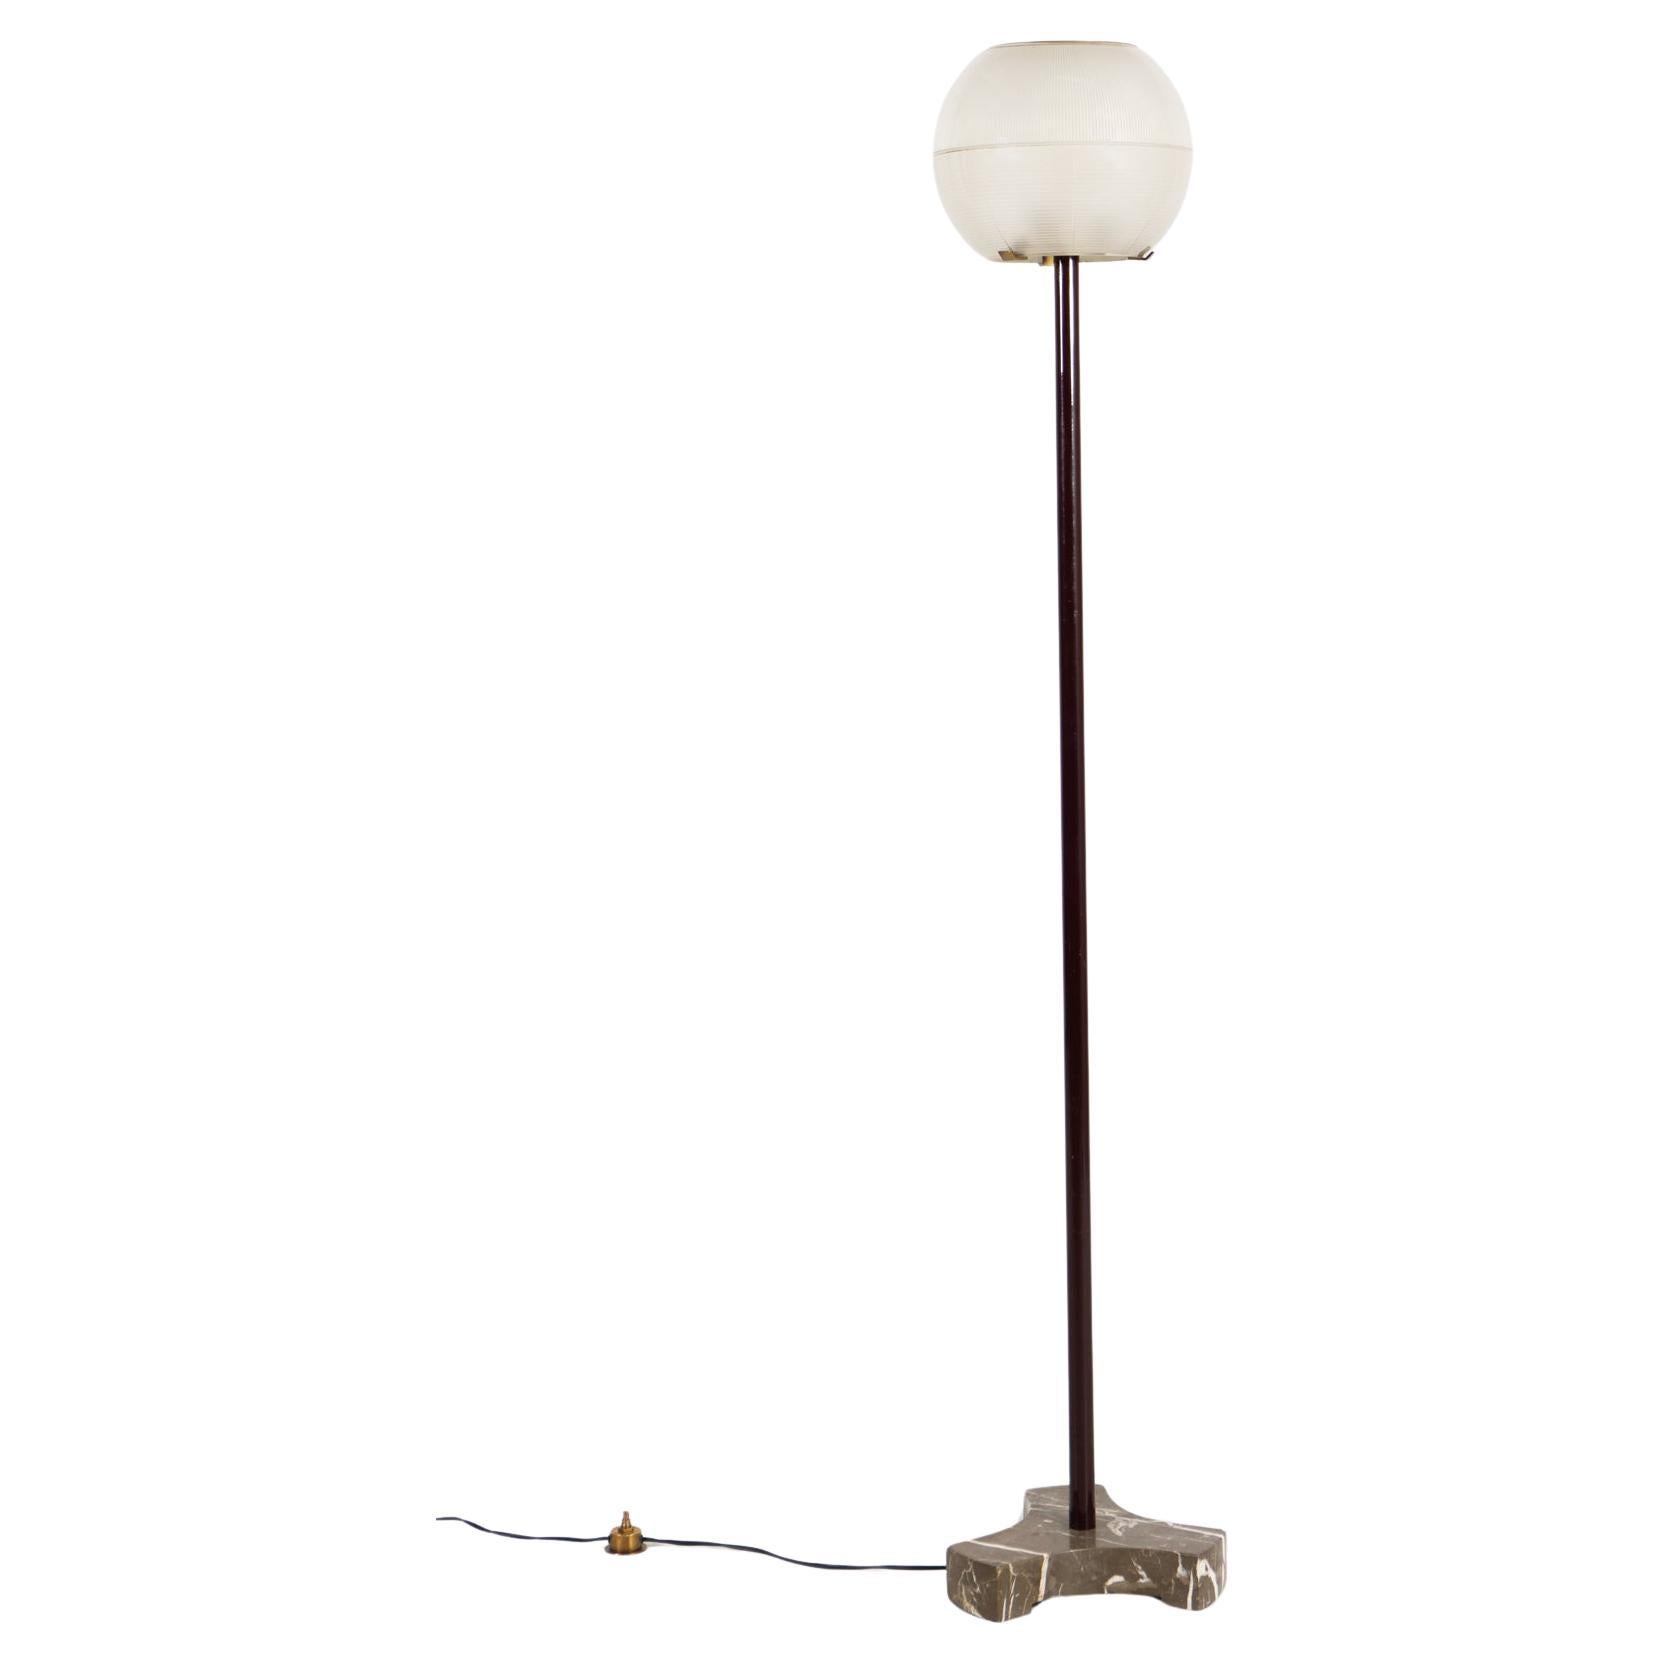 Floor lamp 'LTE 8' by Ignazio Gardella, around 1950